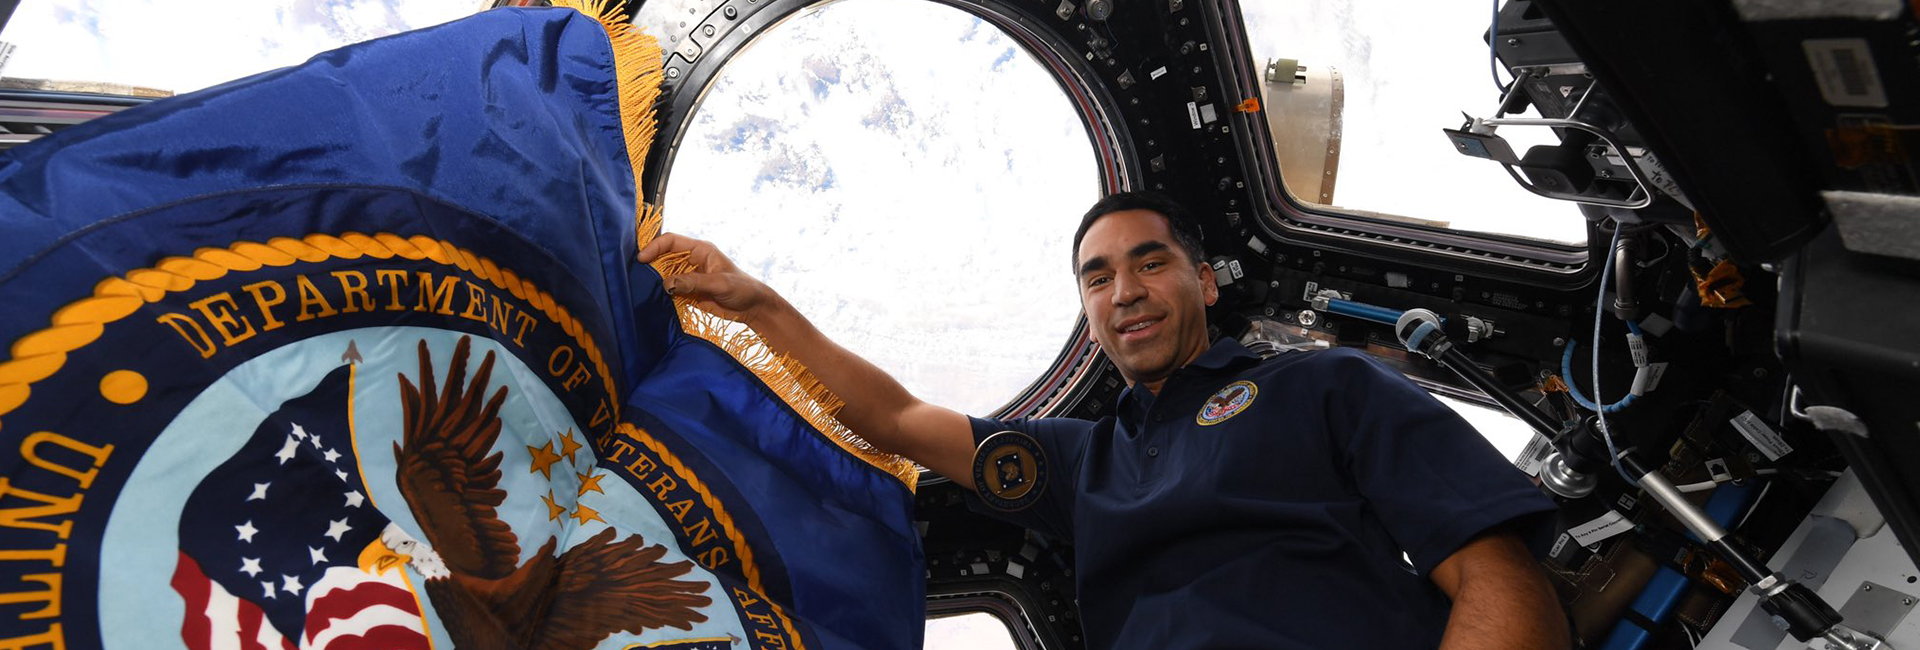 L'astronauta indiano-americano della NASA Raja Chari ha condiviso un'immagine di se stesso attraccato alla Stazione Spaziale Internazionale, un anno fa. L'astronauta si sta preparando per la missione sulla luna della NASA, Artemis.